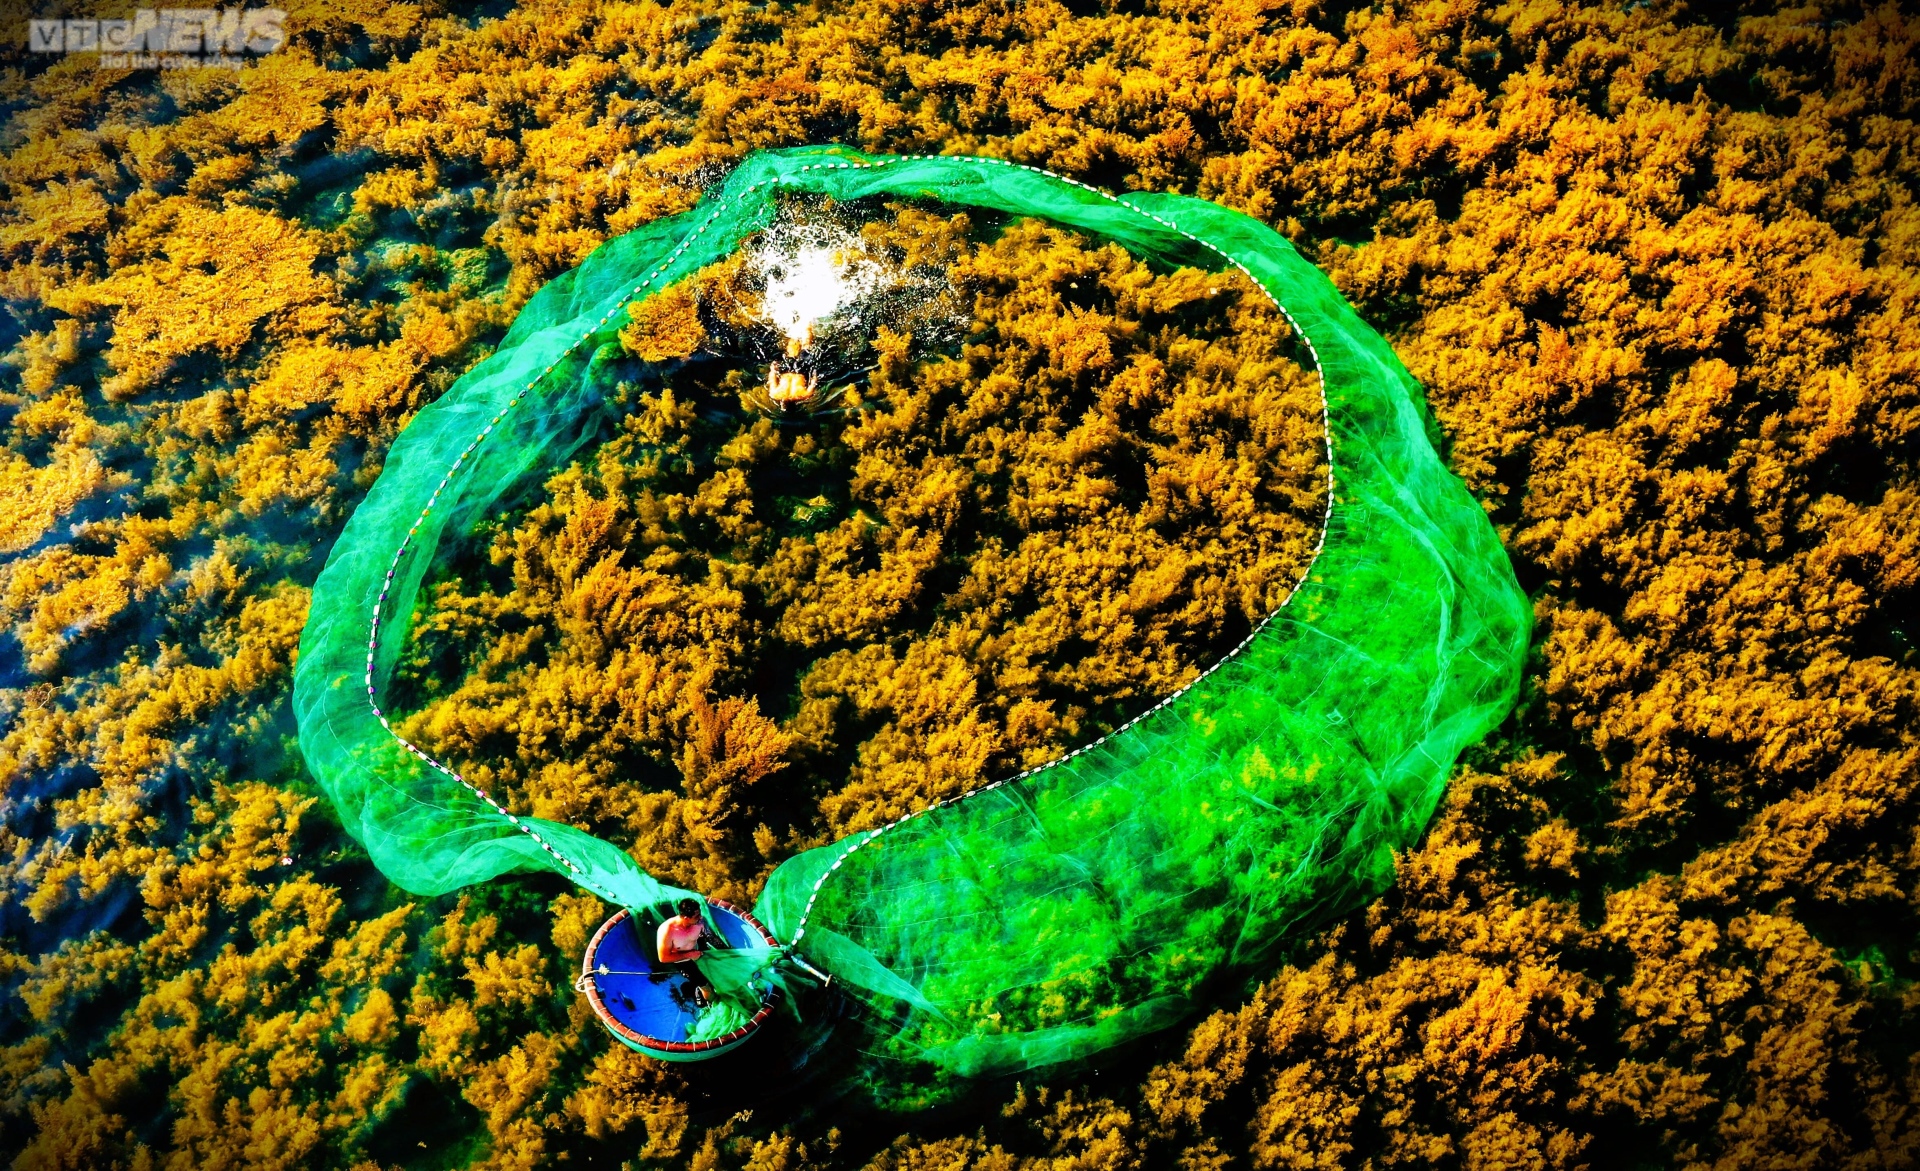 Ngất ngây 'cánh đồng vàng' dưới biển xanh trong ở đảo Hòn Khô, Bình Định - 3